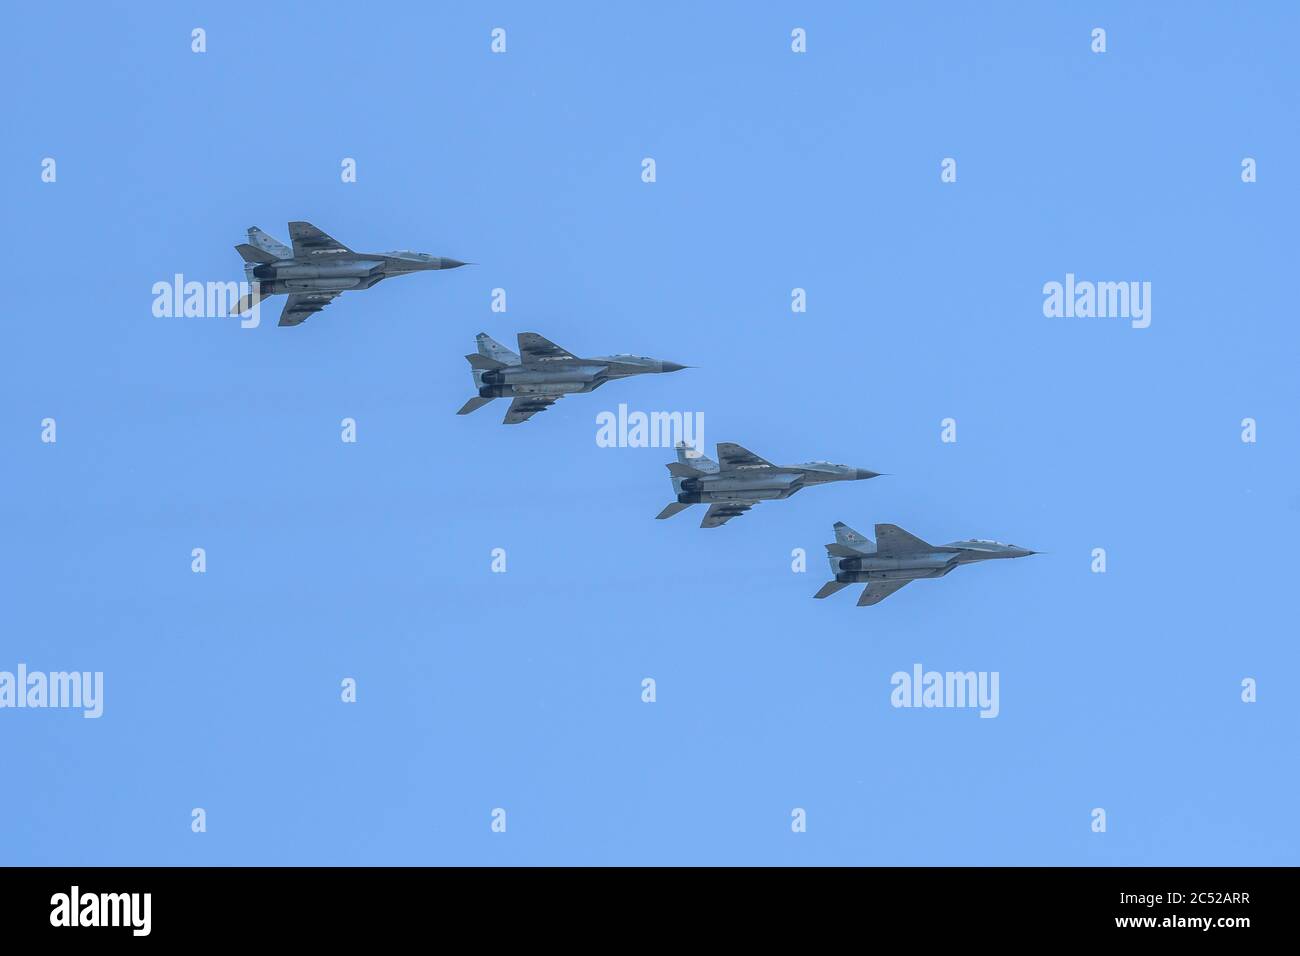 MOSKAU, RUSSLAND - 2020. JUNI: Die vierte Generation der russischen Mehrzweckkämpfer MiG-29 (Fulcrum) bei der Parade zu Ehren des 75. Jahrestages des vic Stockfoto